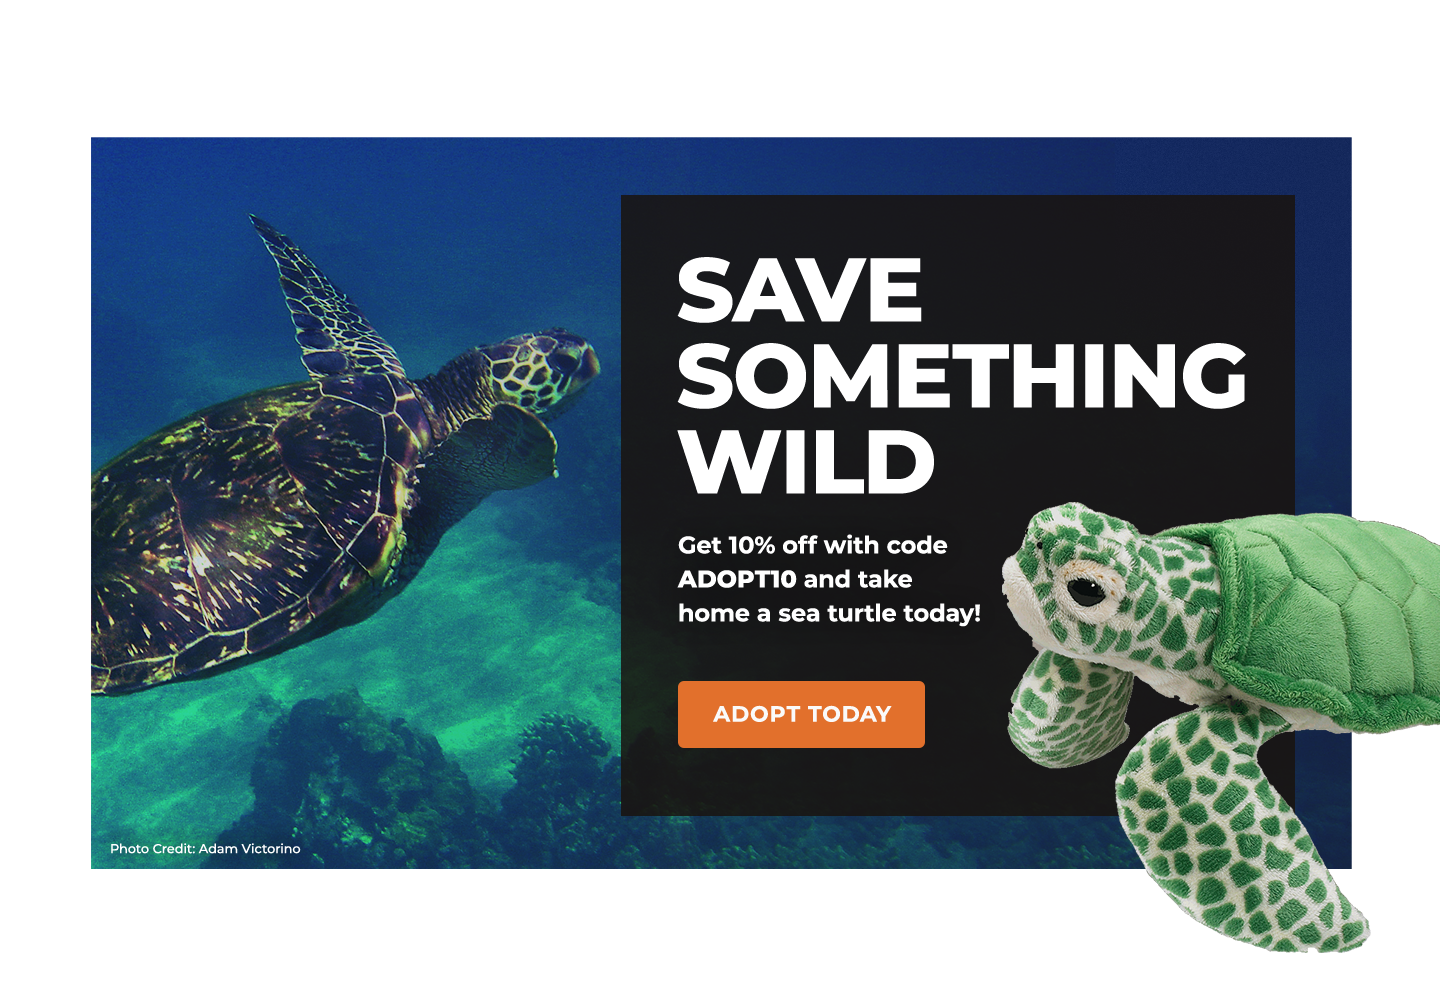 sea-turtles-defenders-of-wildlife